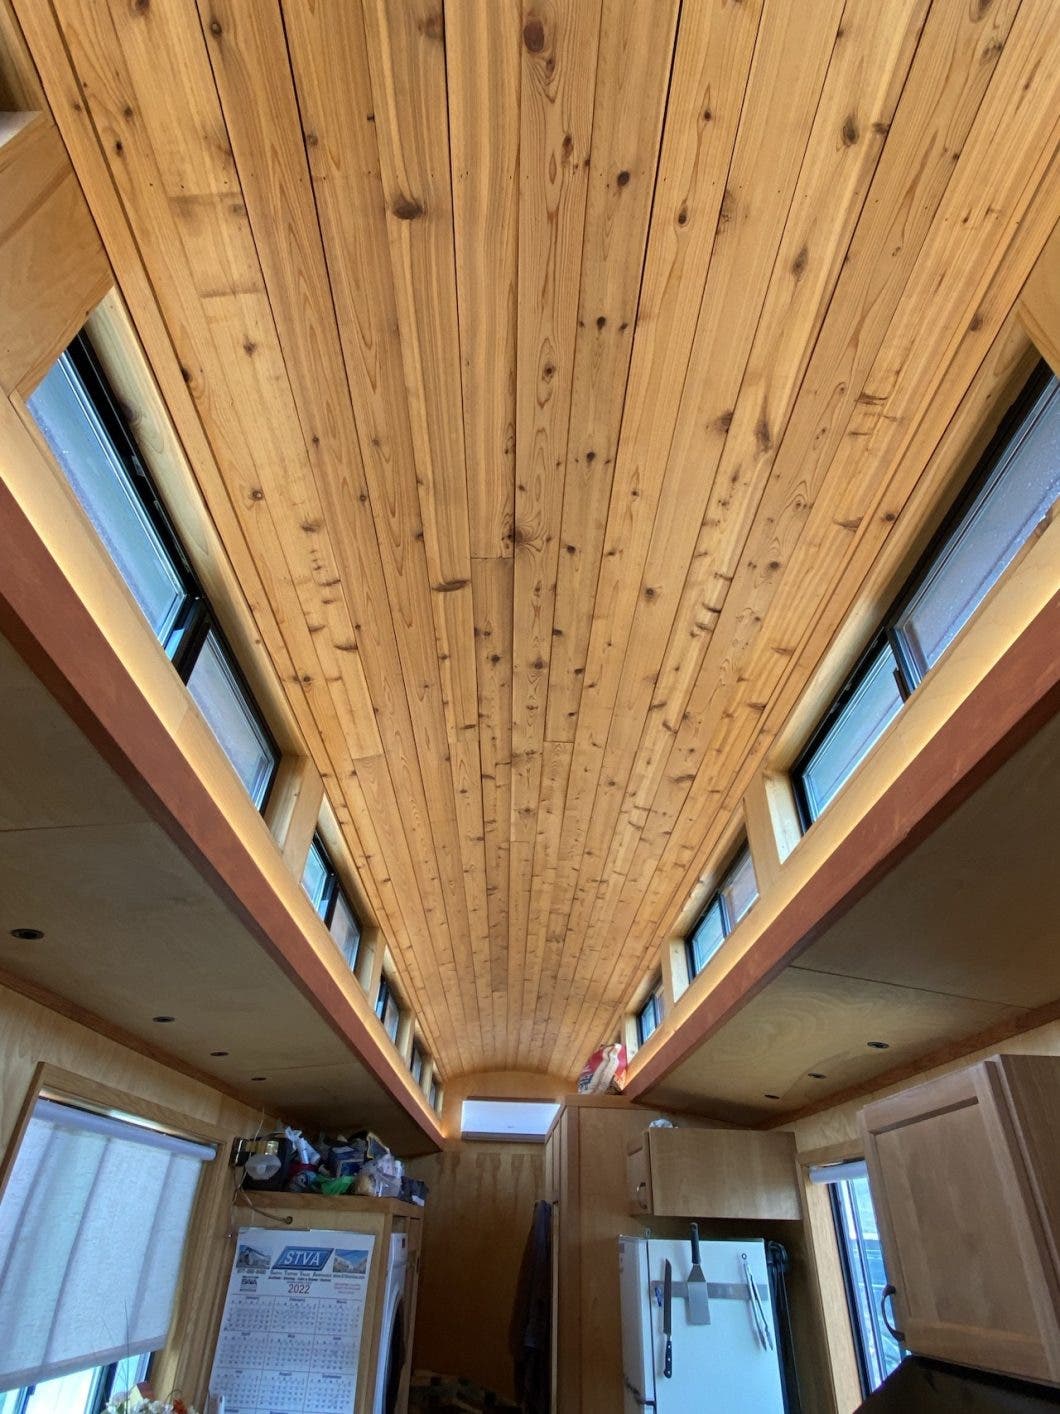 ceiling of interior train